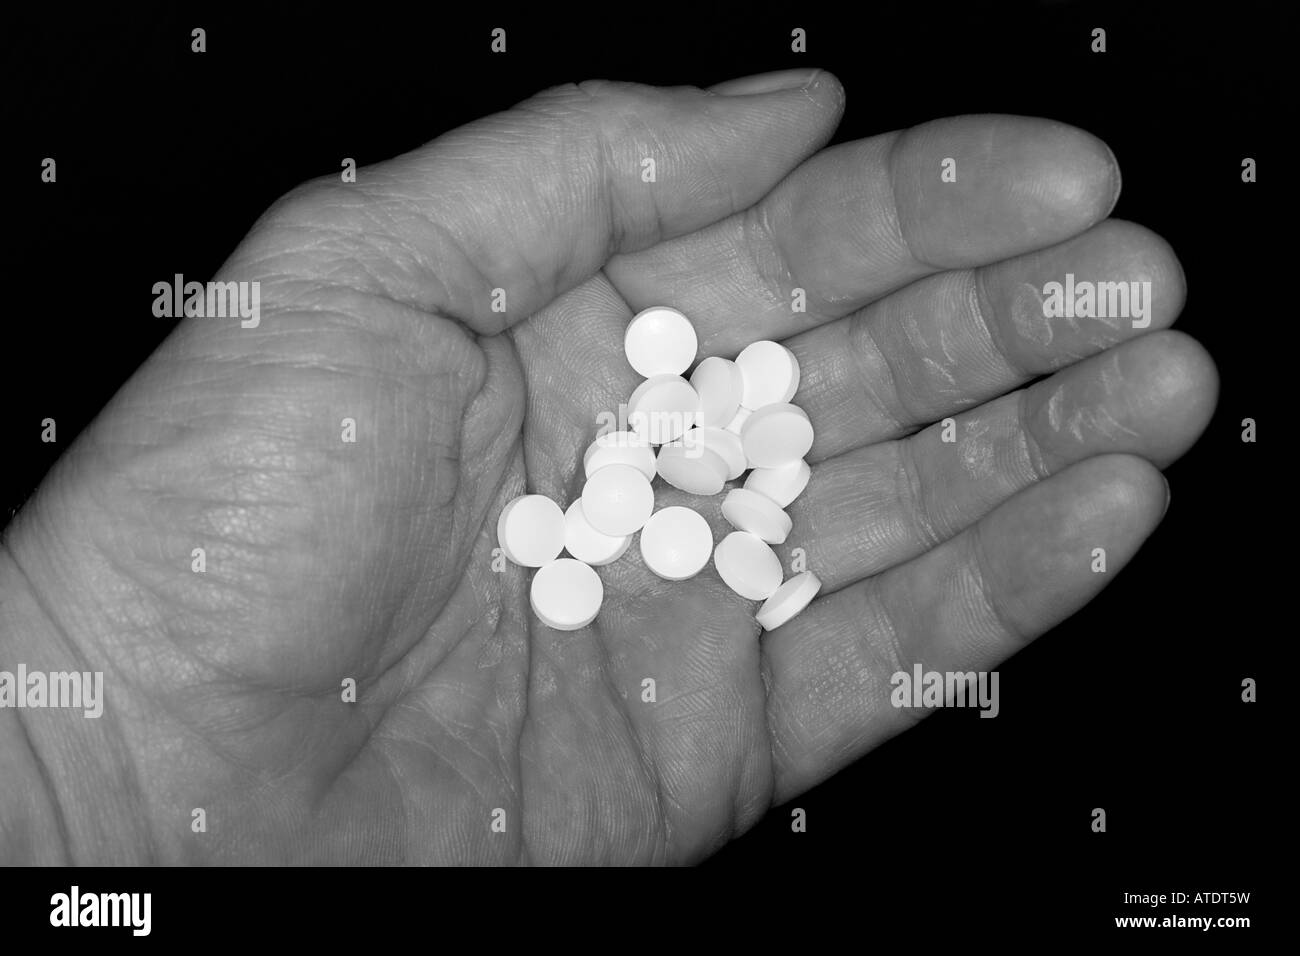 Eine Hand hält generische weiße Pillen Stockfoto